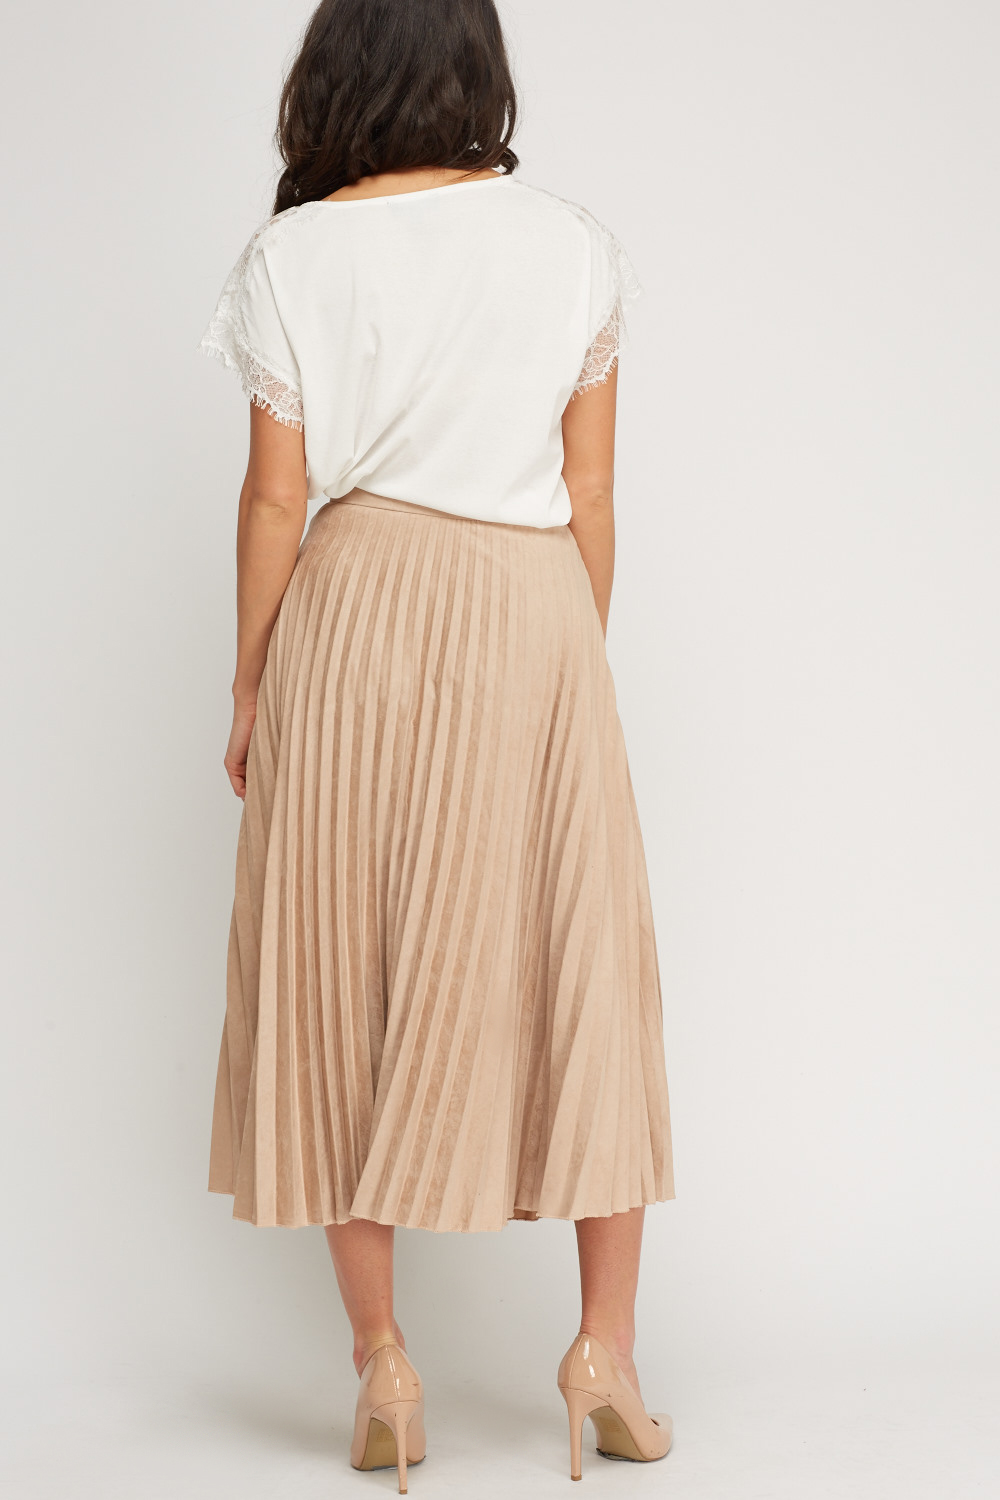 Pleated High Waist Suedette Midi Skirt - Just $6